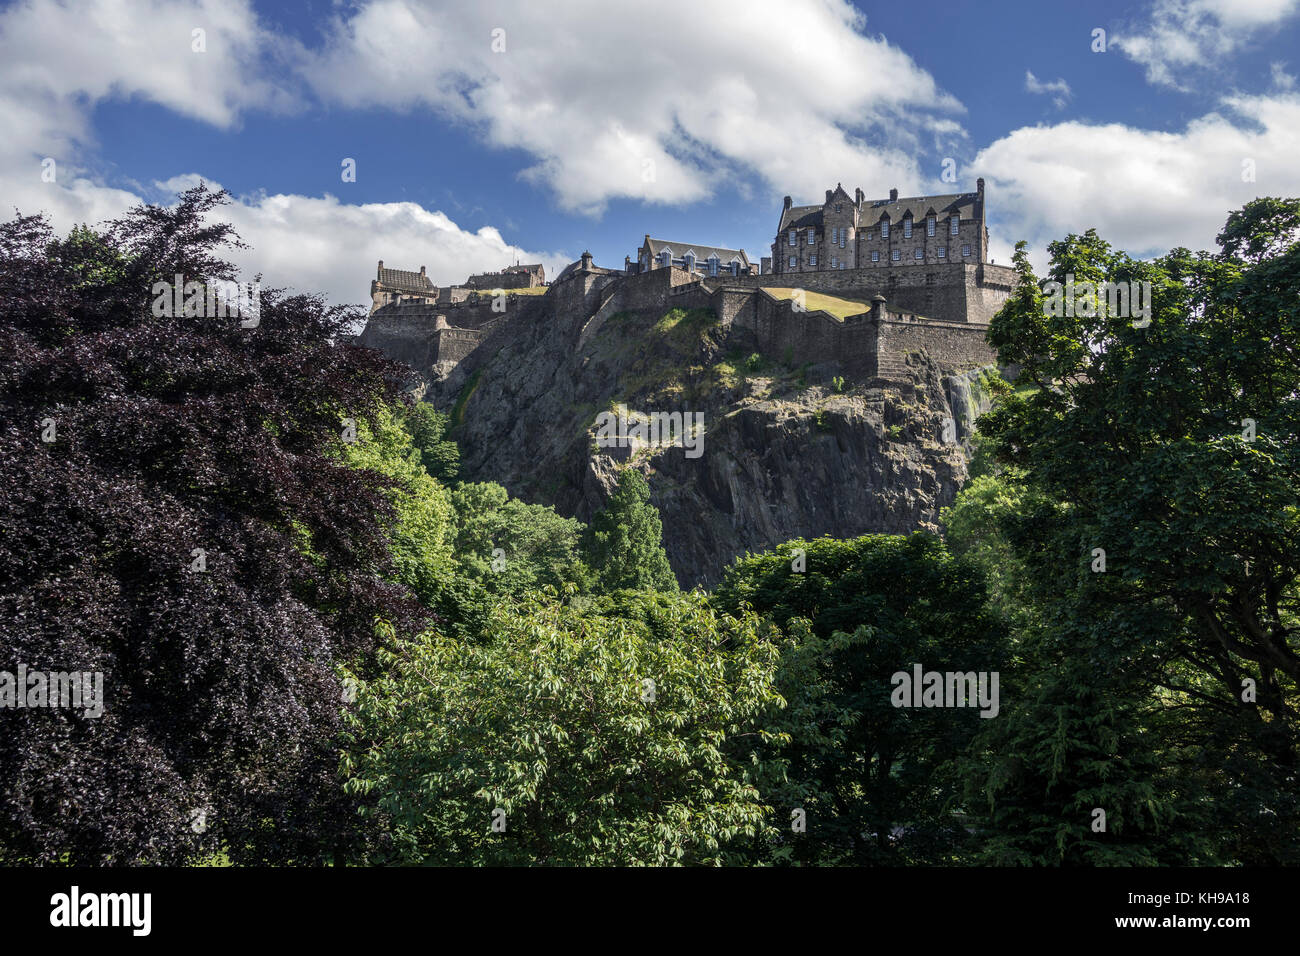 Das Edinburgh Castle, eine Festung am Castle Rock berühmt für das Edinburgh Tattoo zeigen, gesehen von West Princes Street Edinburgh Schottland Stockfoto